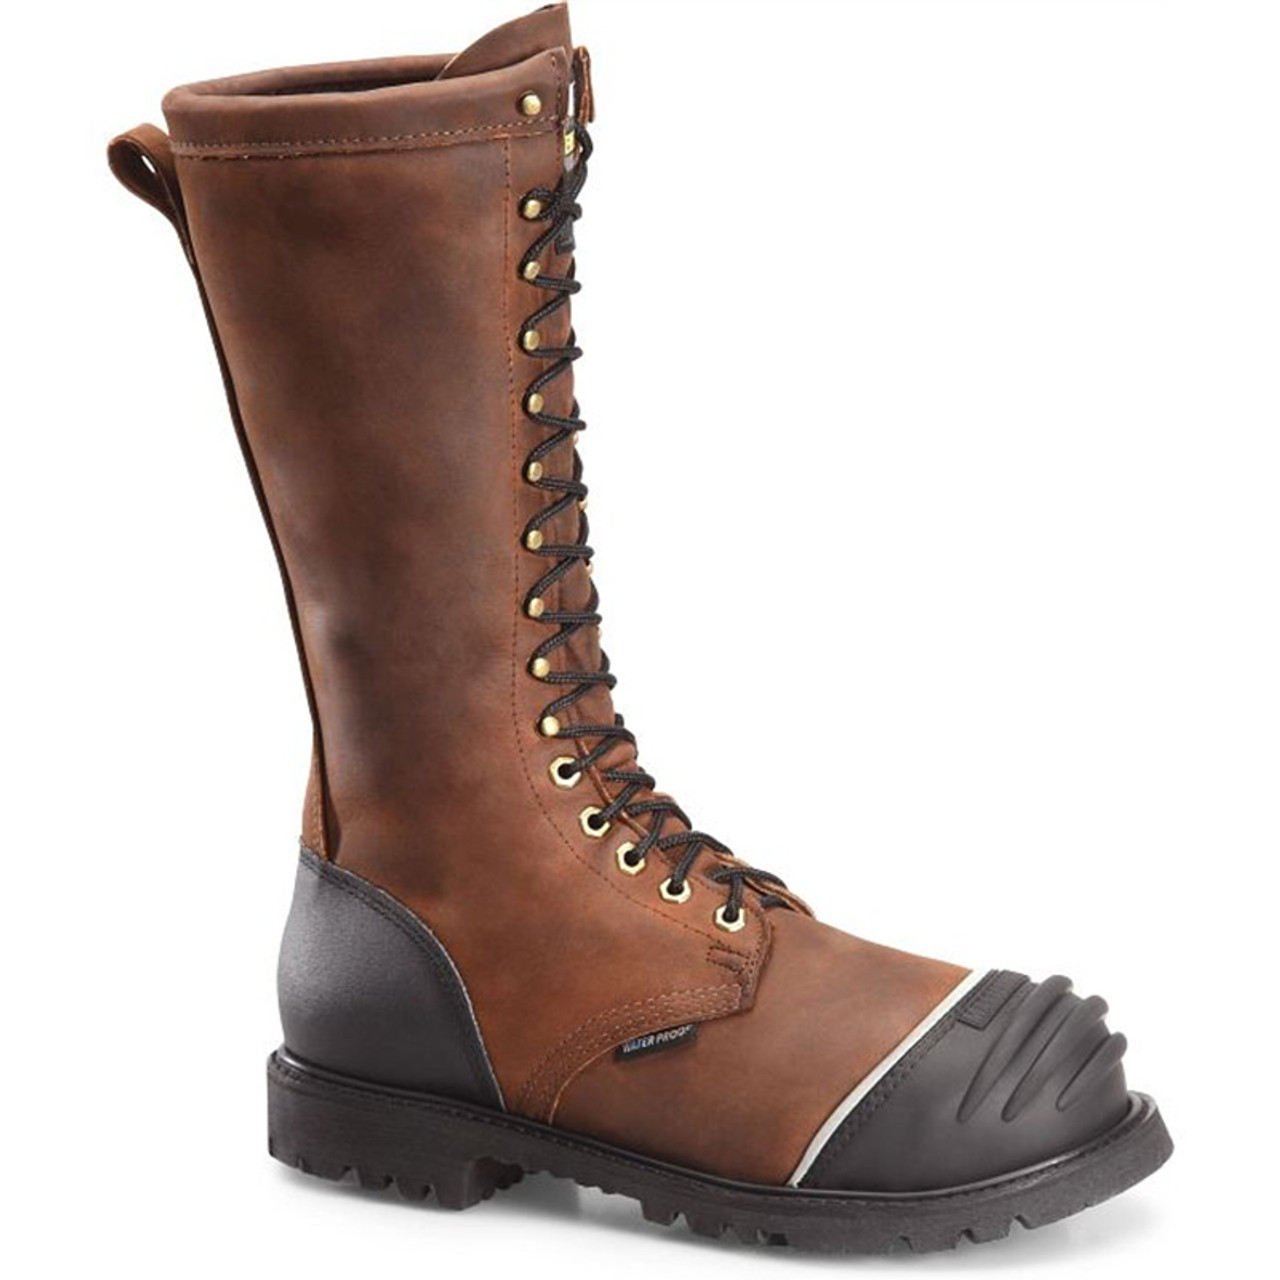 Matterhorn Boots | BEST Mining Boots